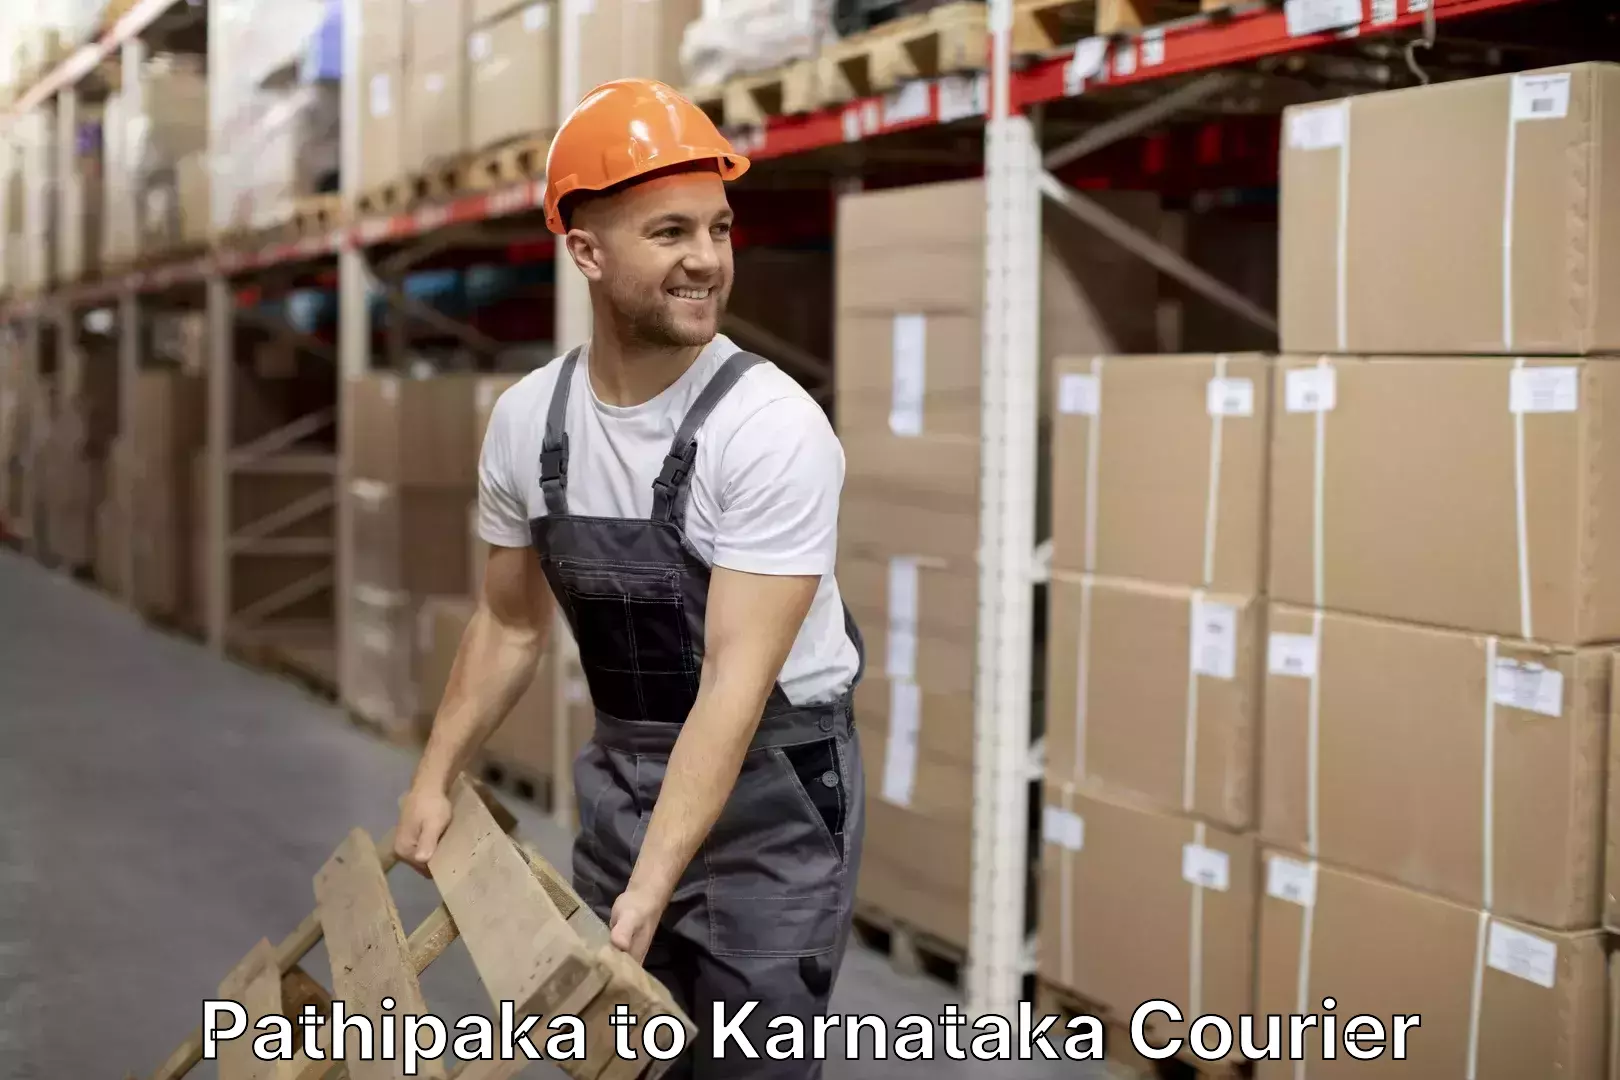 Efficient packing and moving Pathipaka to Karnataka